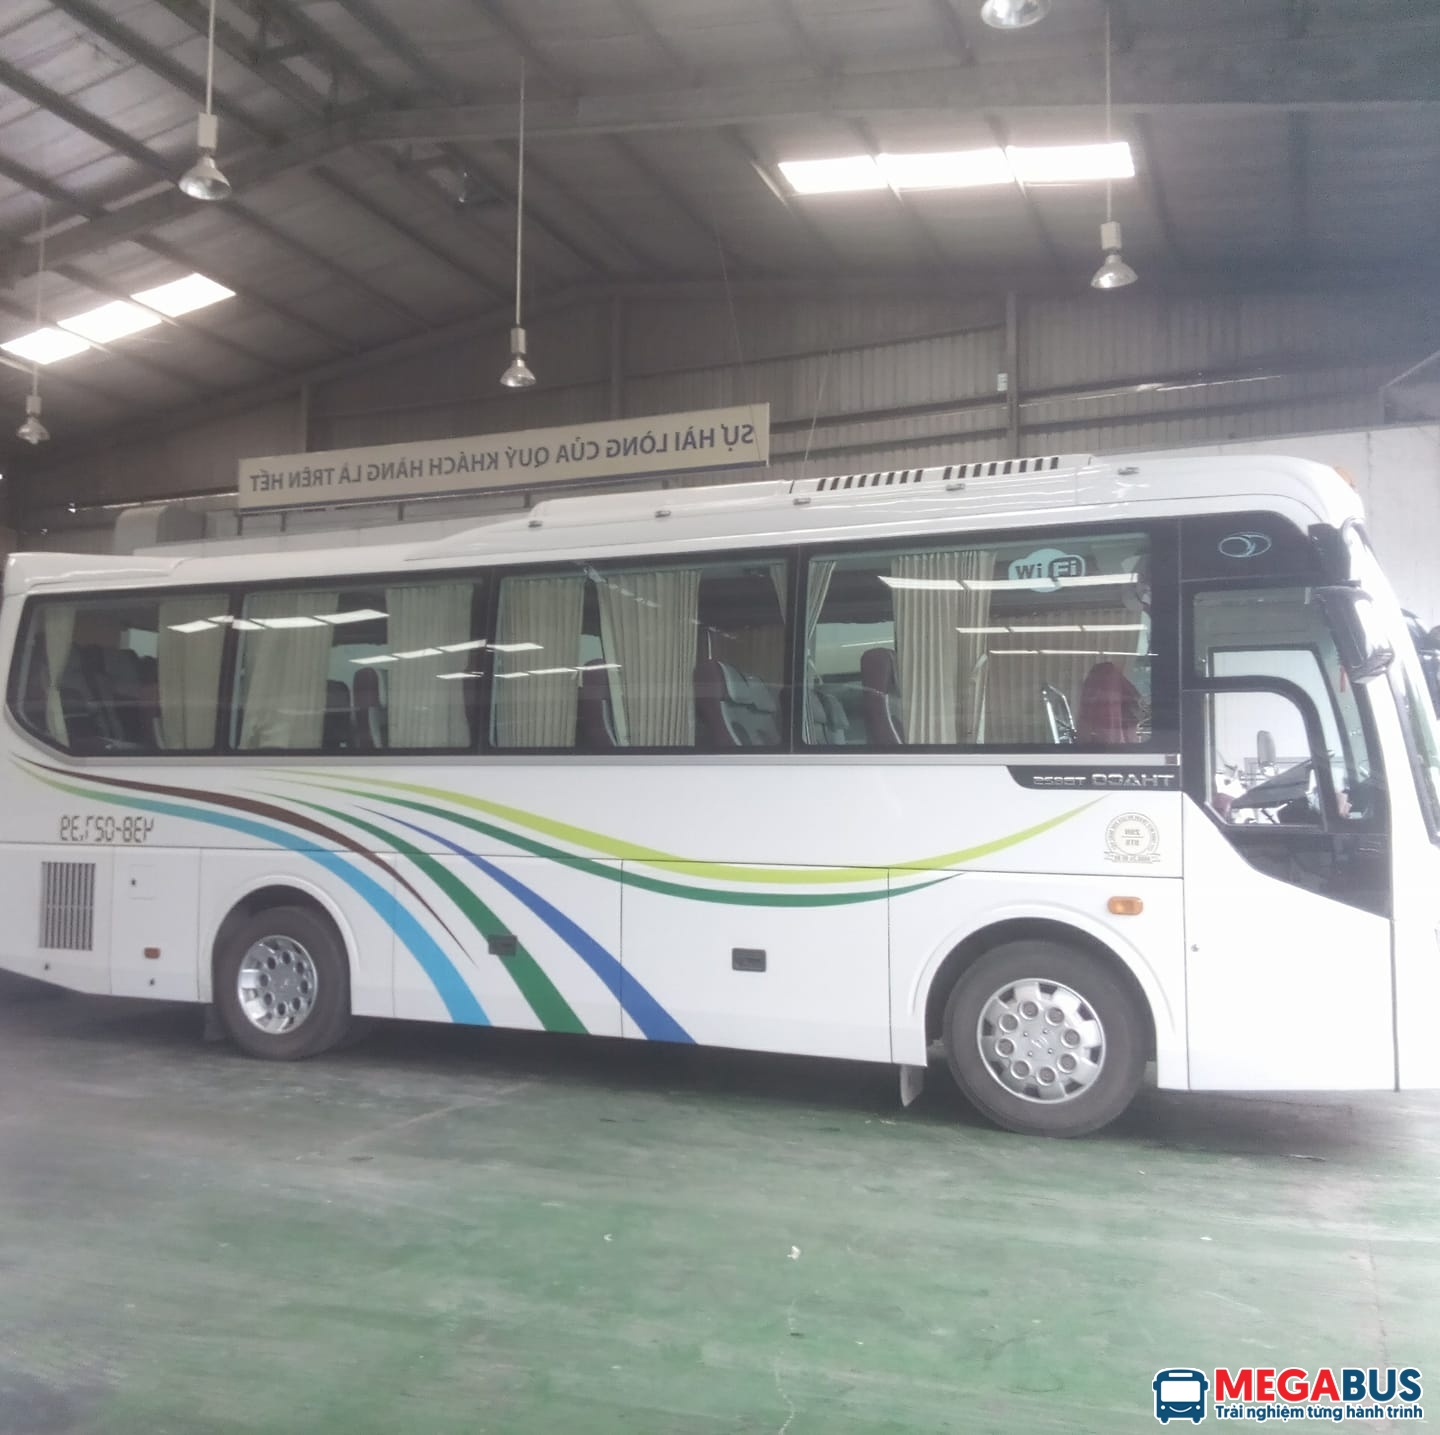 Danh sách xe khách tuyến Kiên Giang đi An Giang chất lượng - Megabus.vn ...